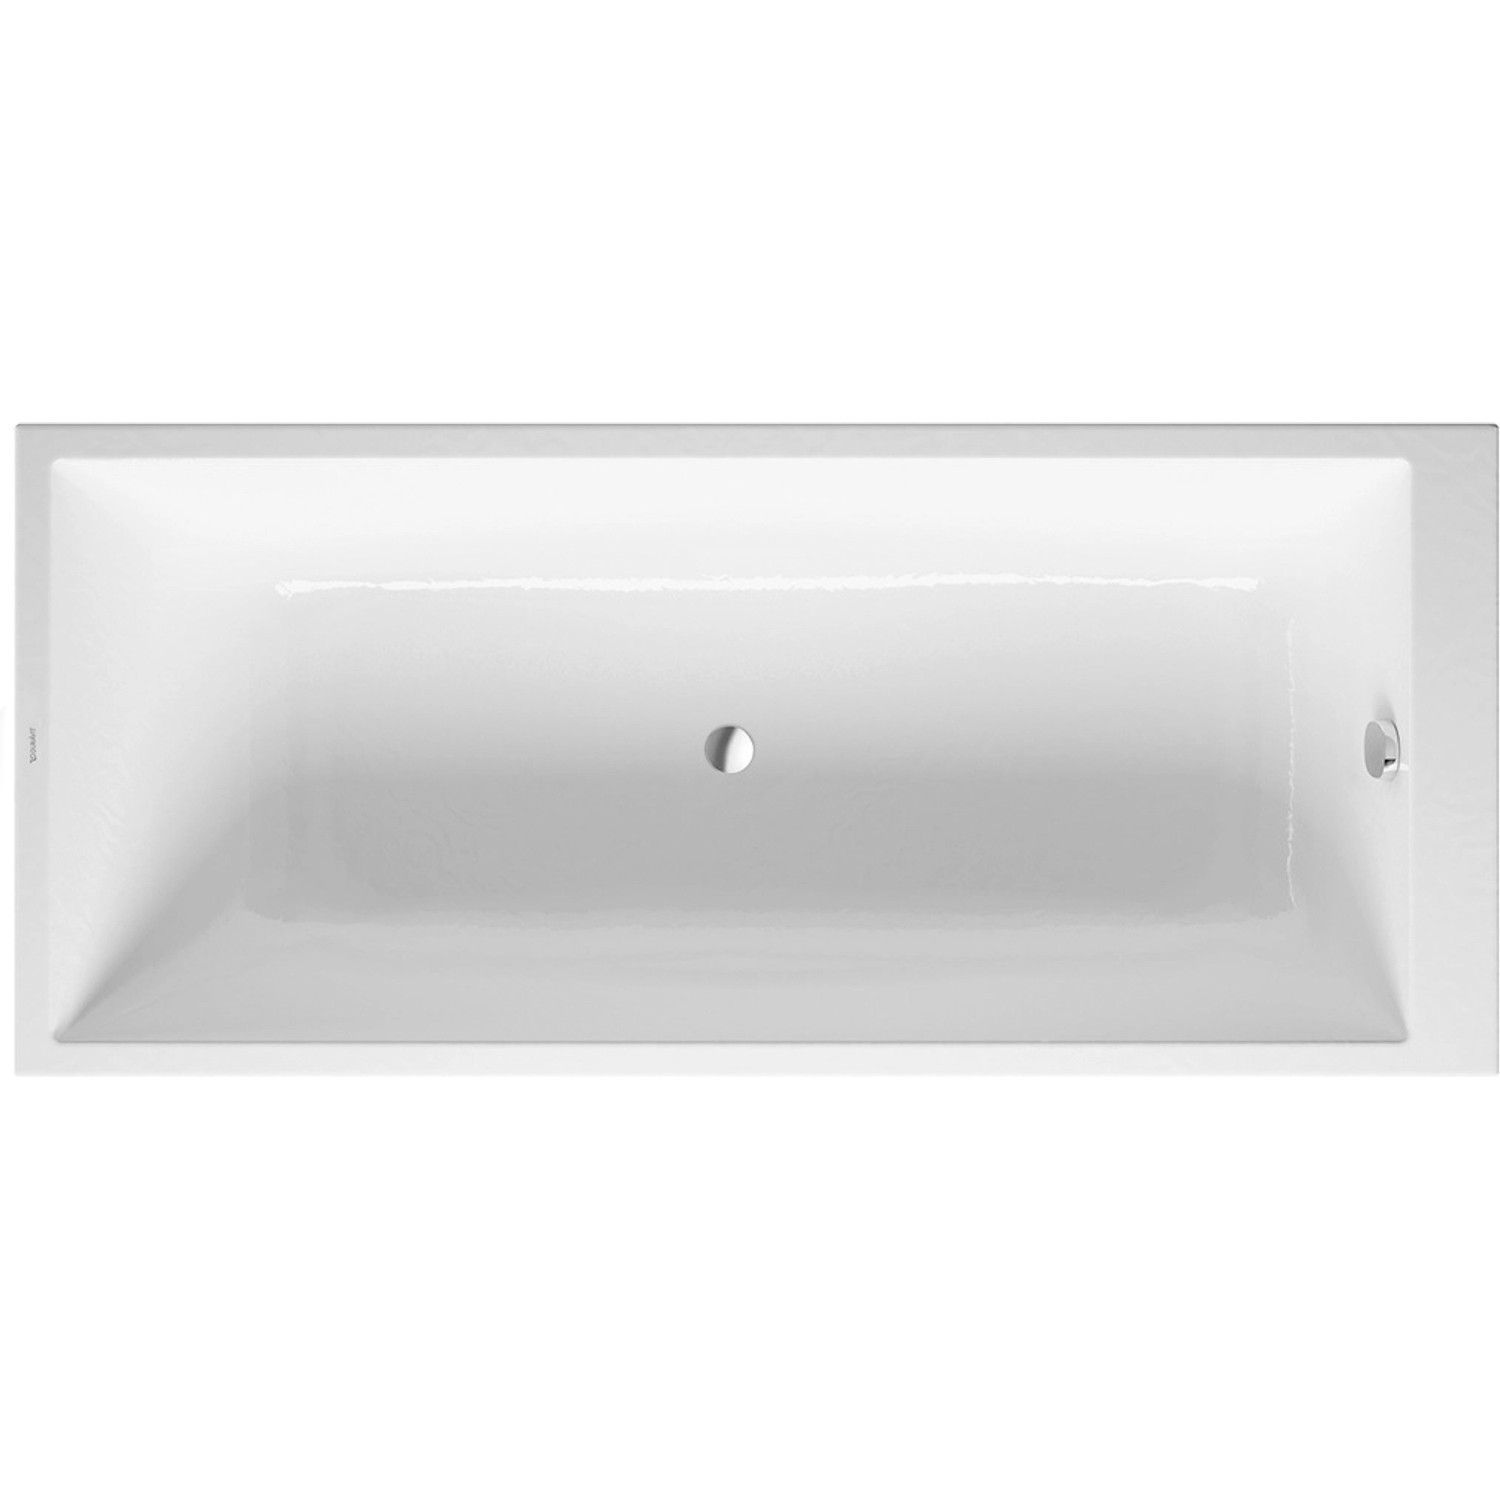 Duravit Badewanne DuraStyle 170 cm x 75 cm Einbauversion Weiß